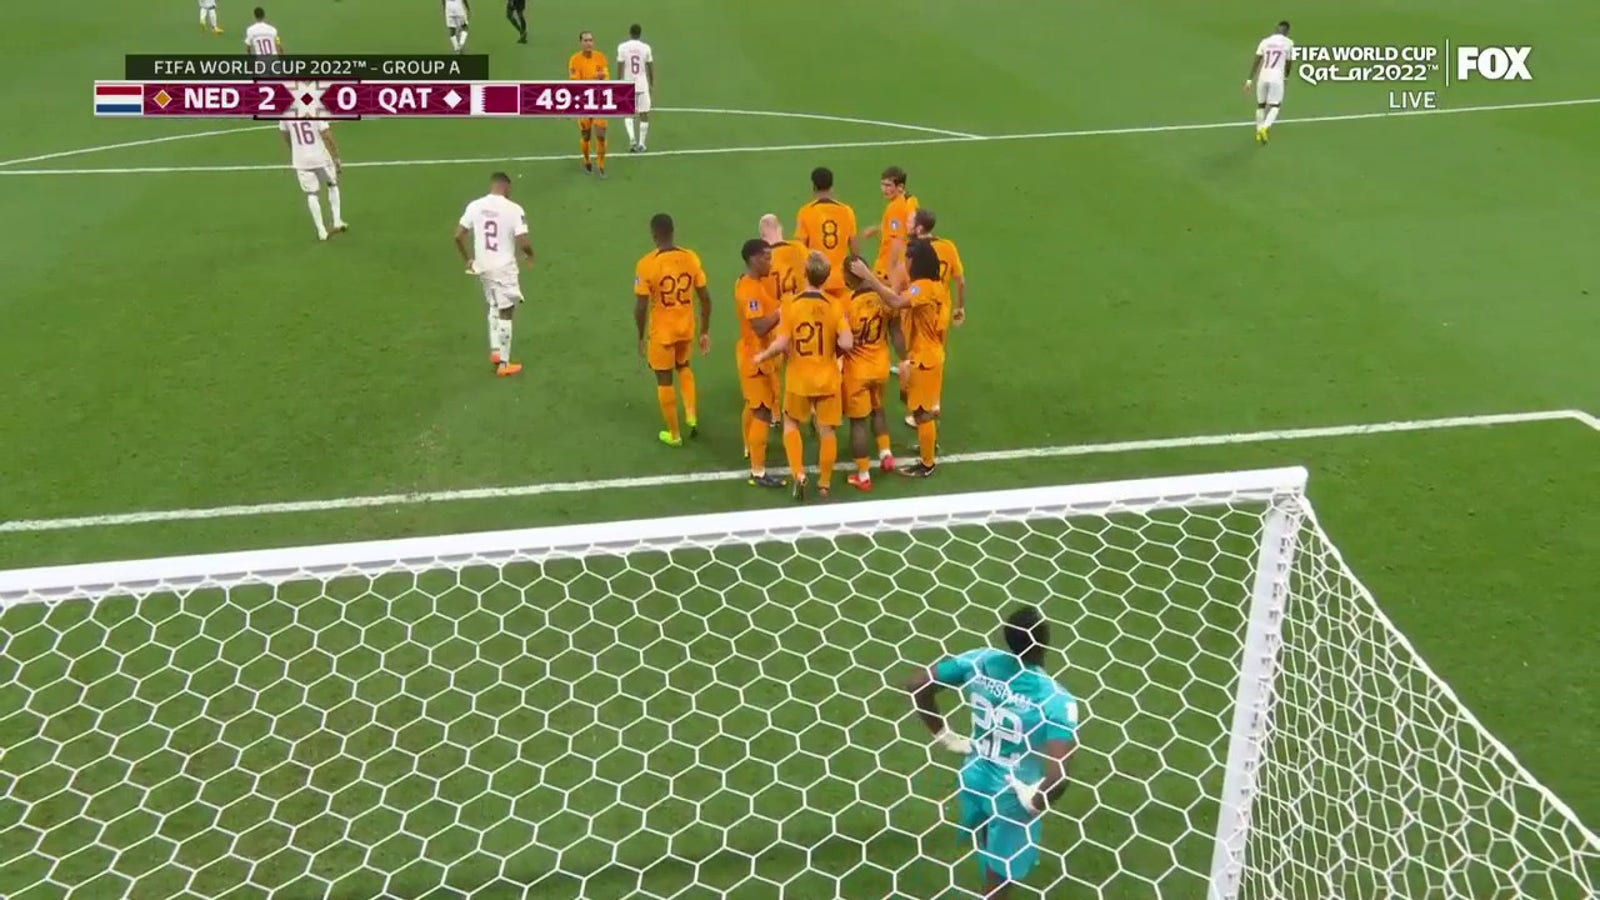 Netherlands's Frenkie De Jong scores goal vs. Qatar in 49'